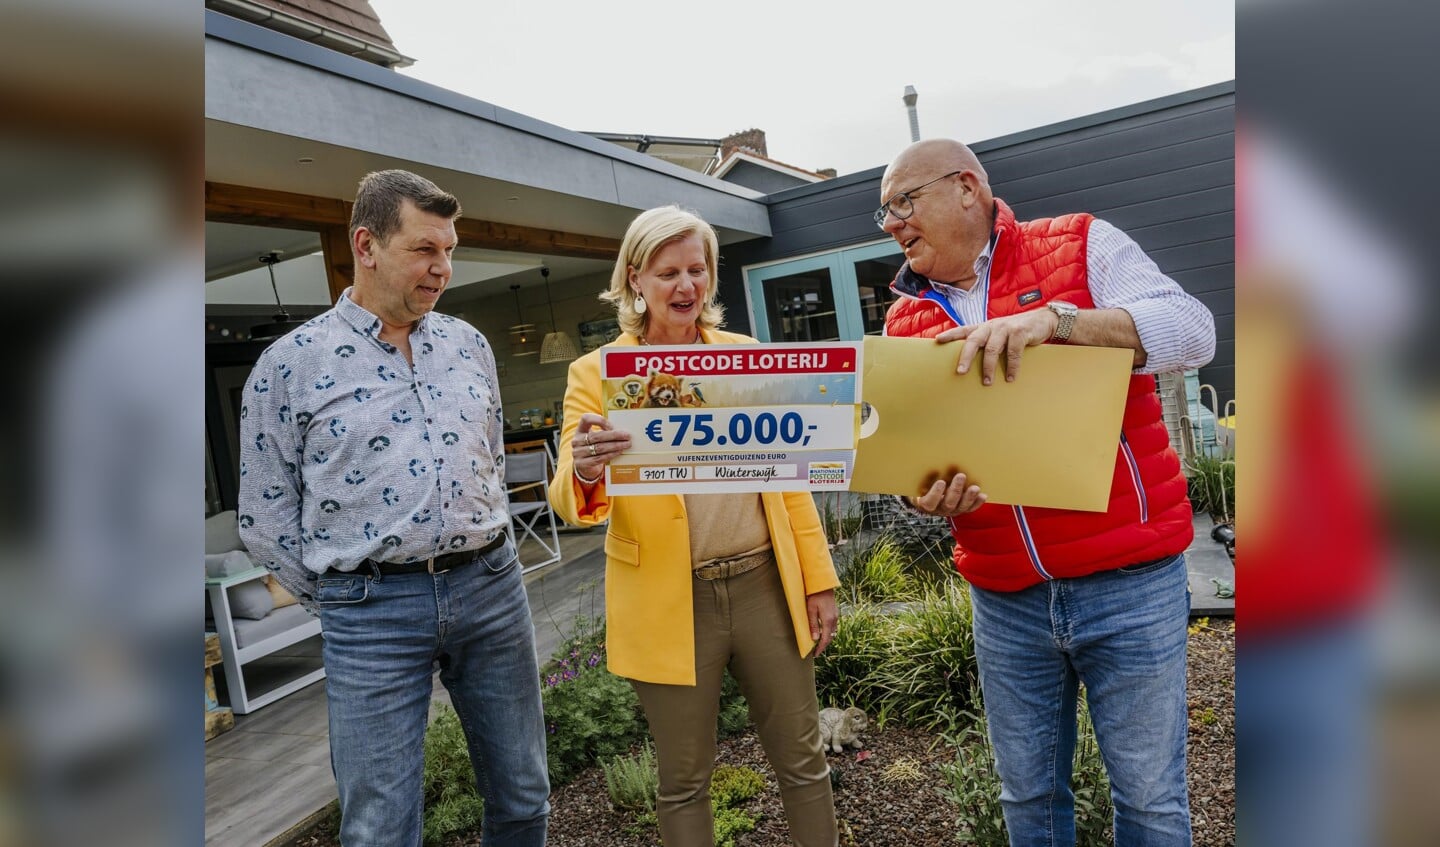 Natasja en Marcel spelen mee met drie loten, daarom winnen zij 75.000 euro. Foto: Amy van Leiden